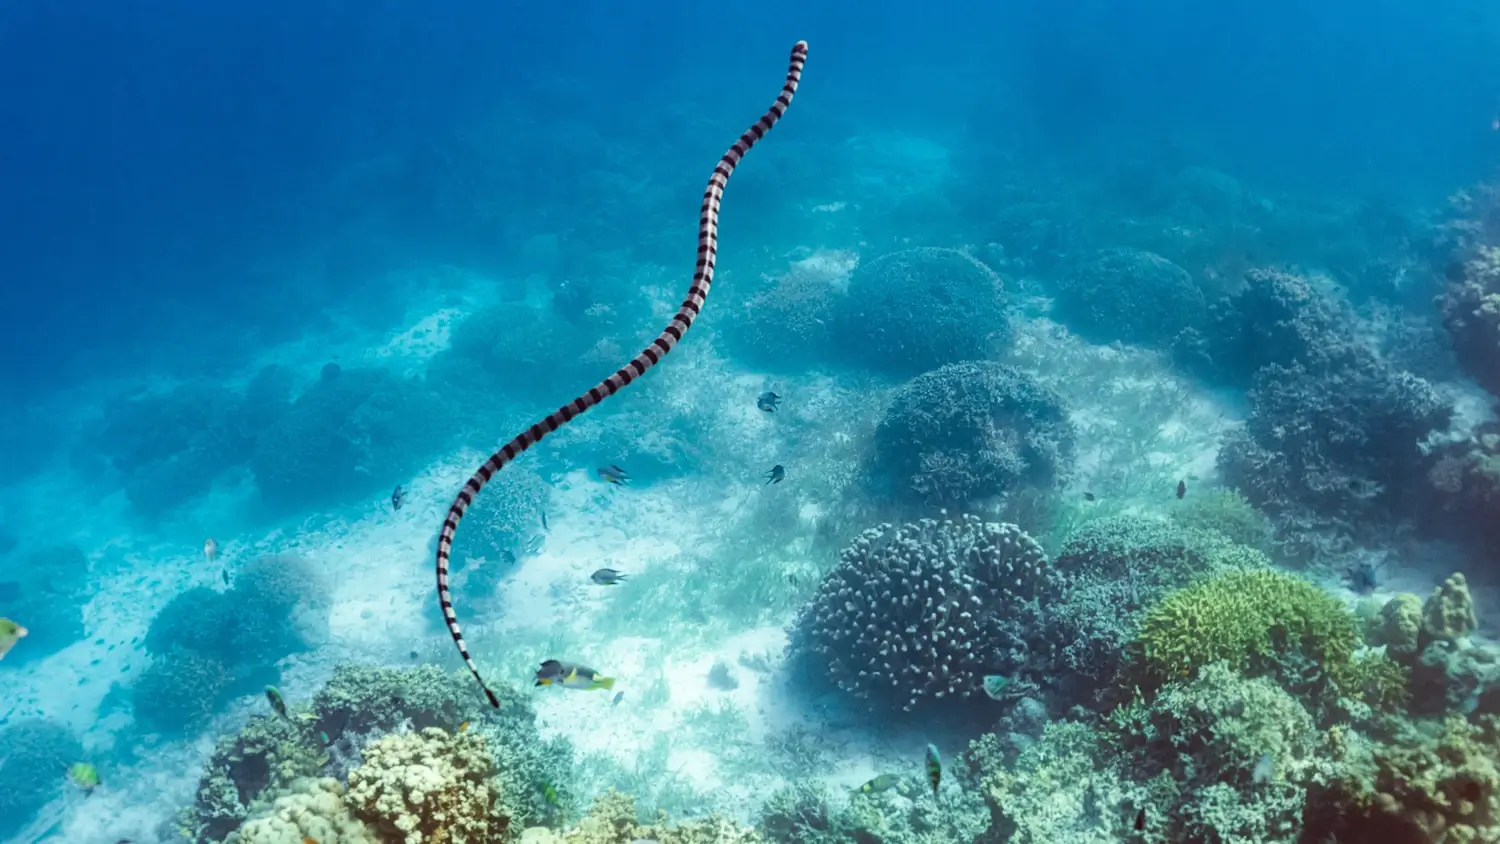 Морская змея, плывущая по прозрачной голубой воде с кораллами под ней